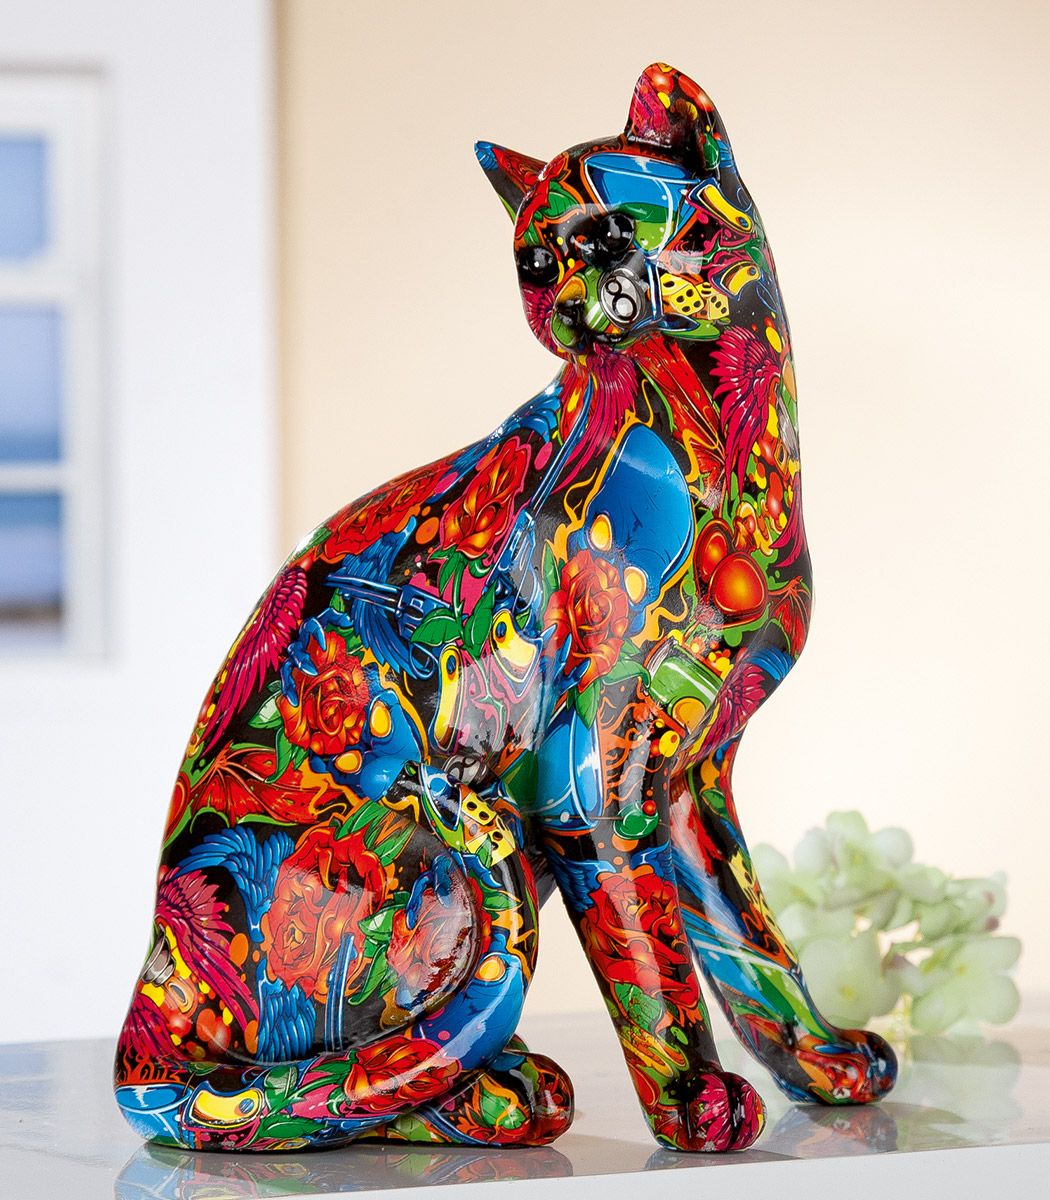 Katzen-Figur "Streetart"